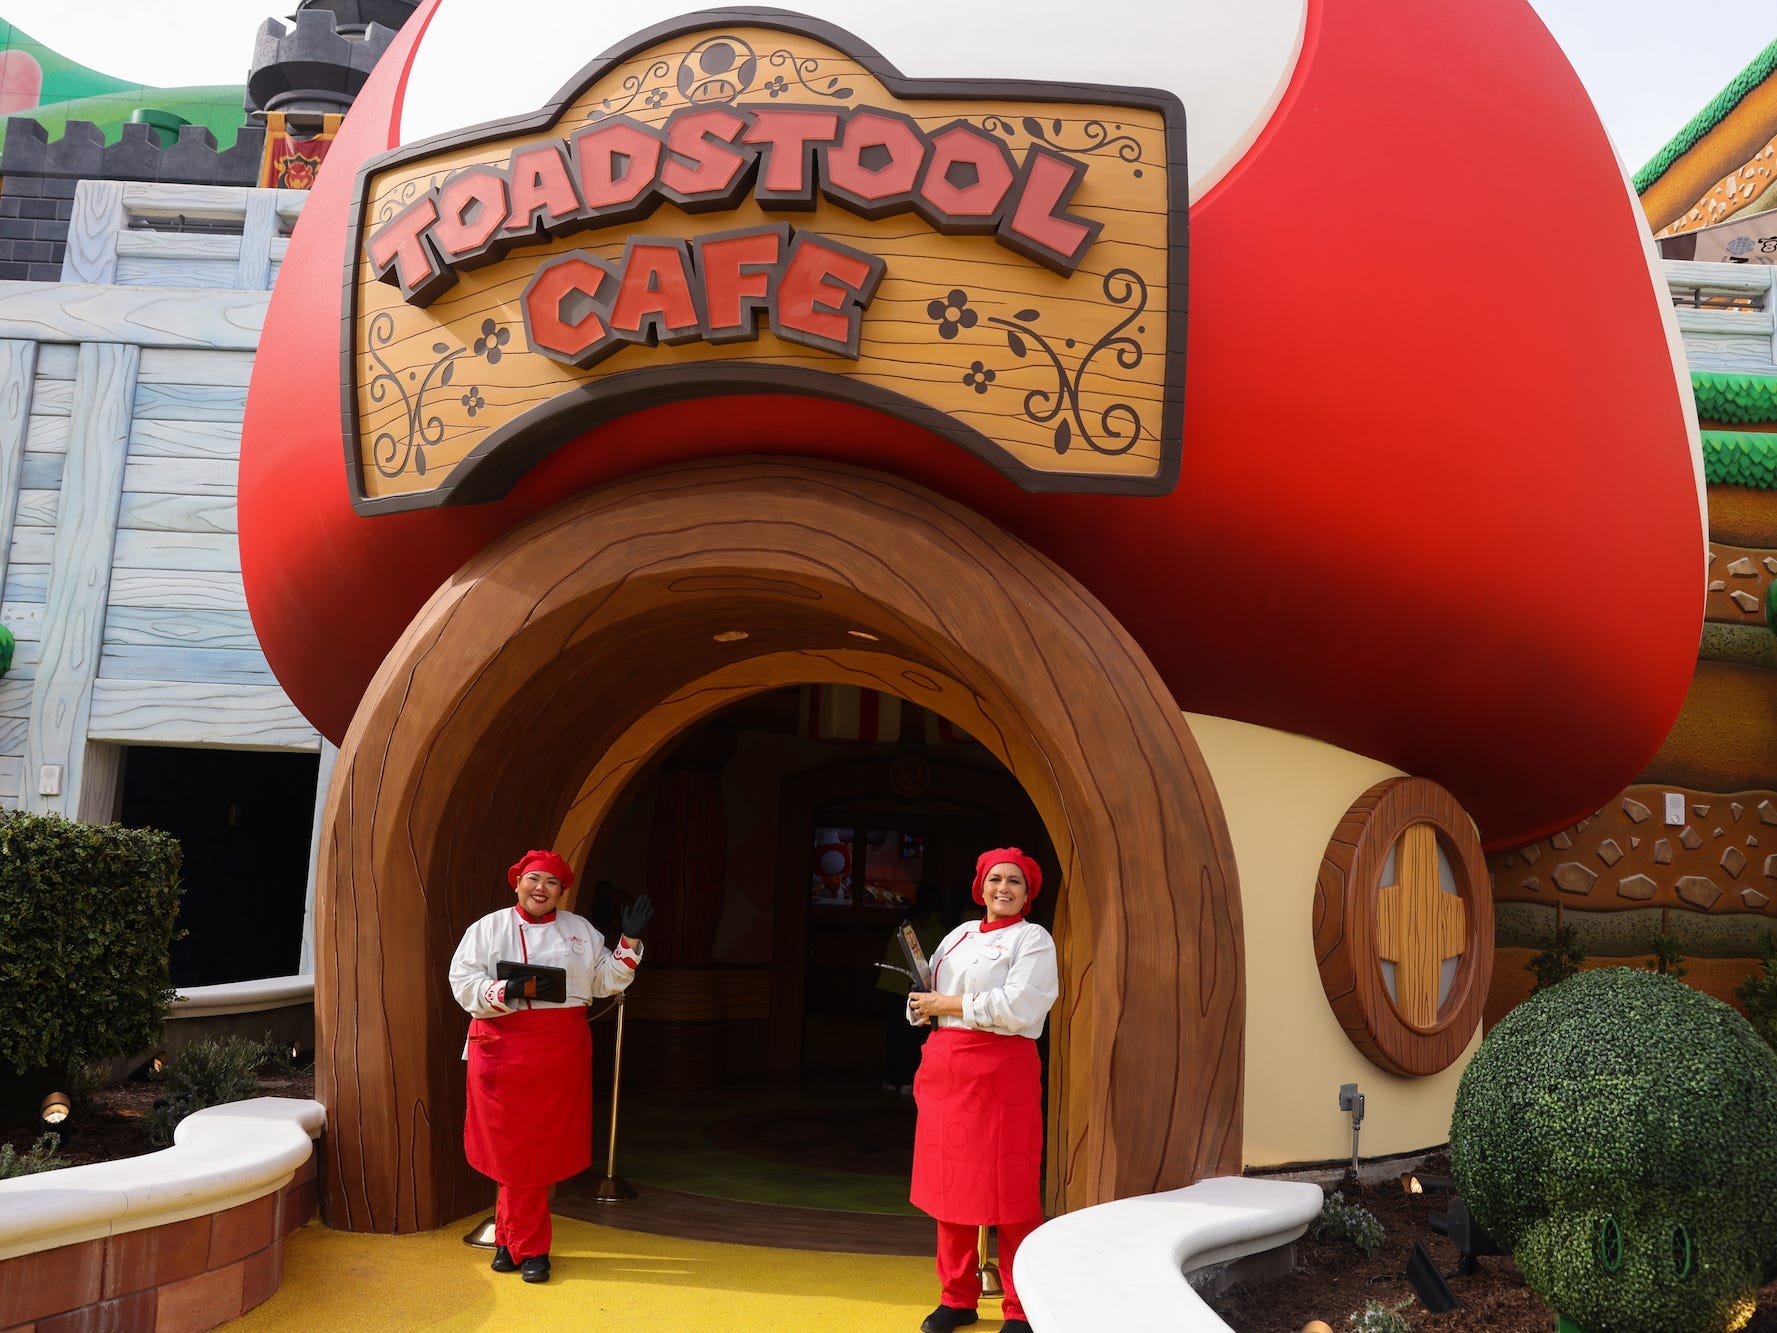 Greeter erwarten am Donnerstag, den 12. Januar 2023 in Los Angeles, Kalifornien, Menschen zum Mittagessen im Toadstool Cafe in der Super Nintendo World.